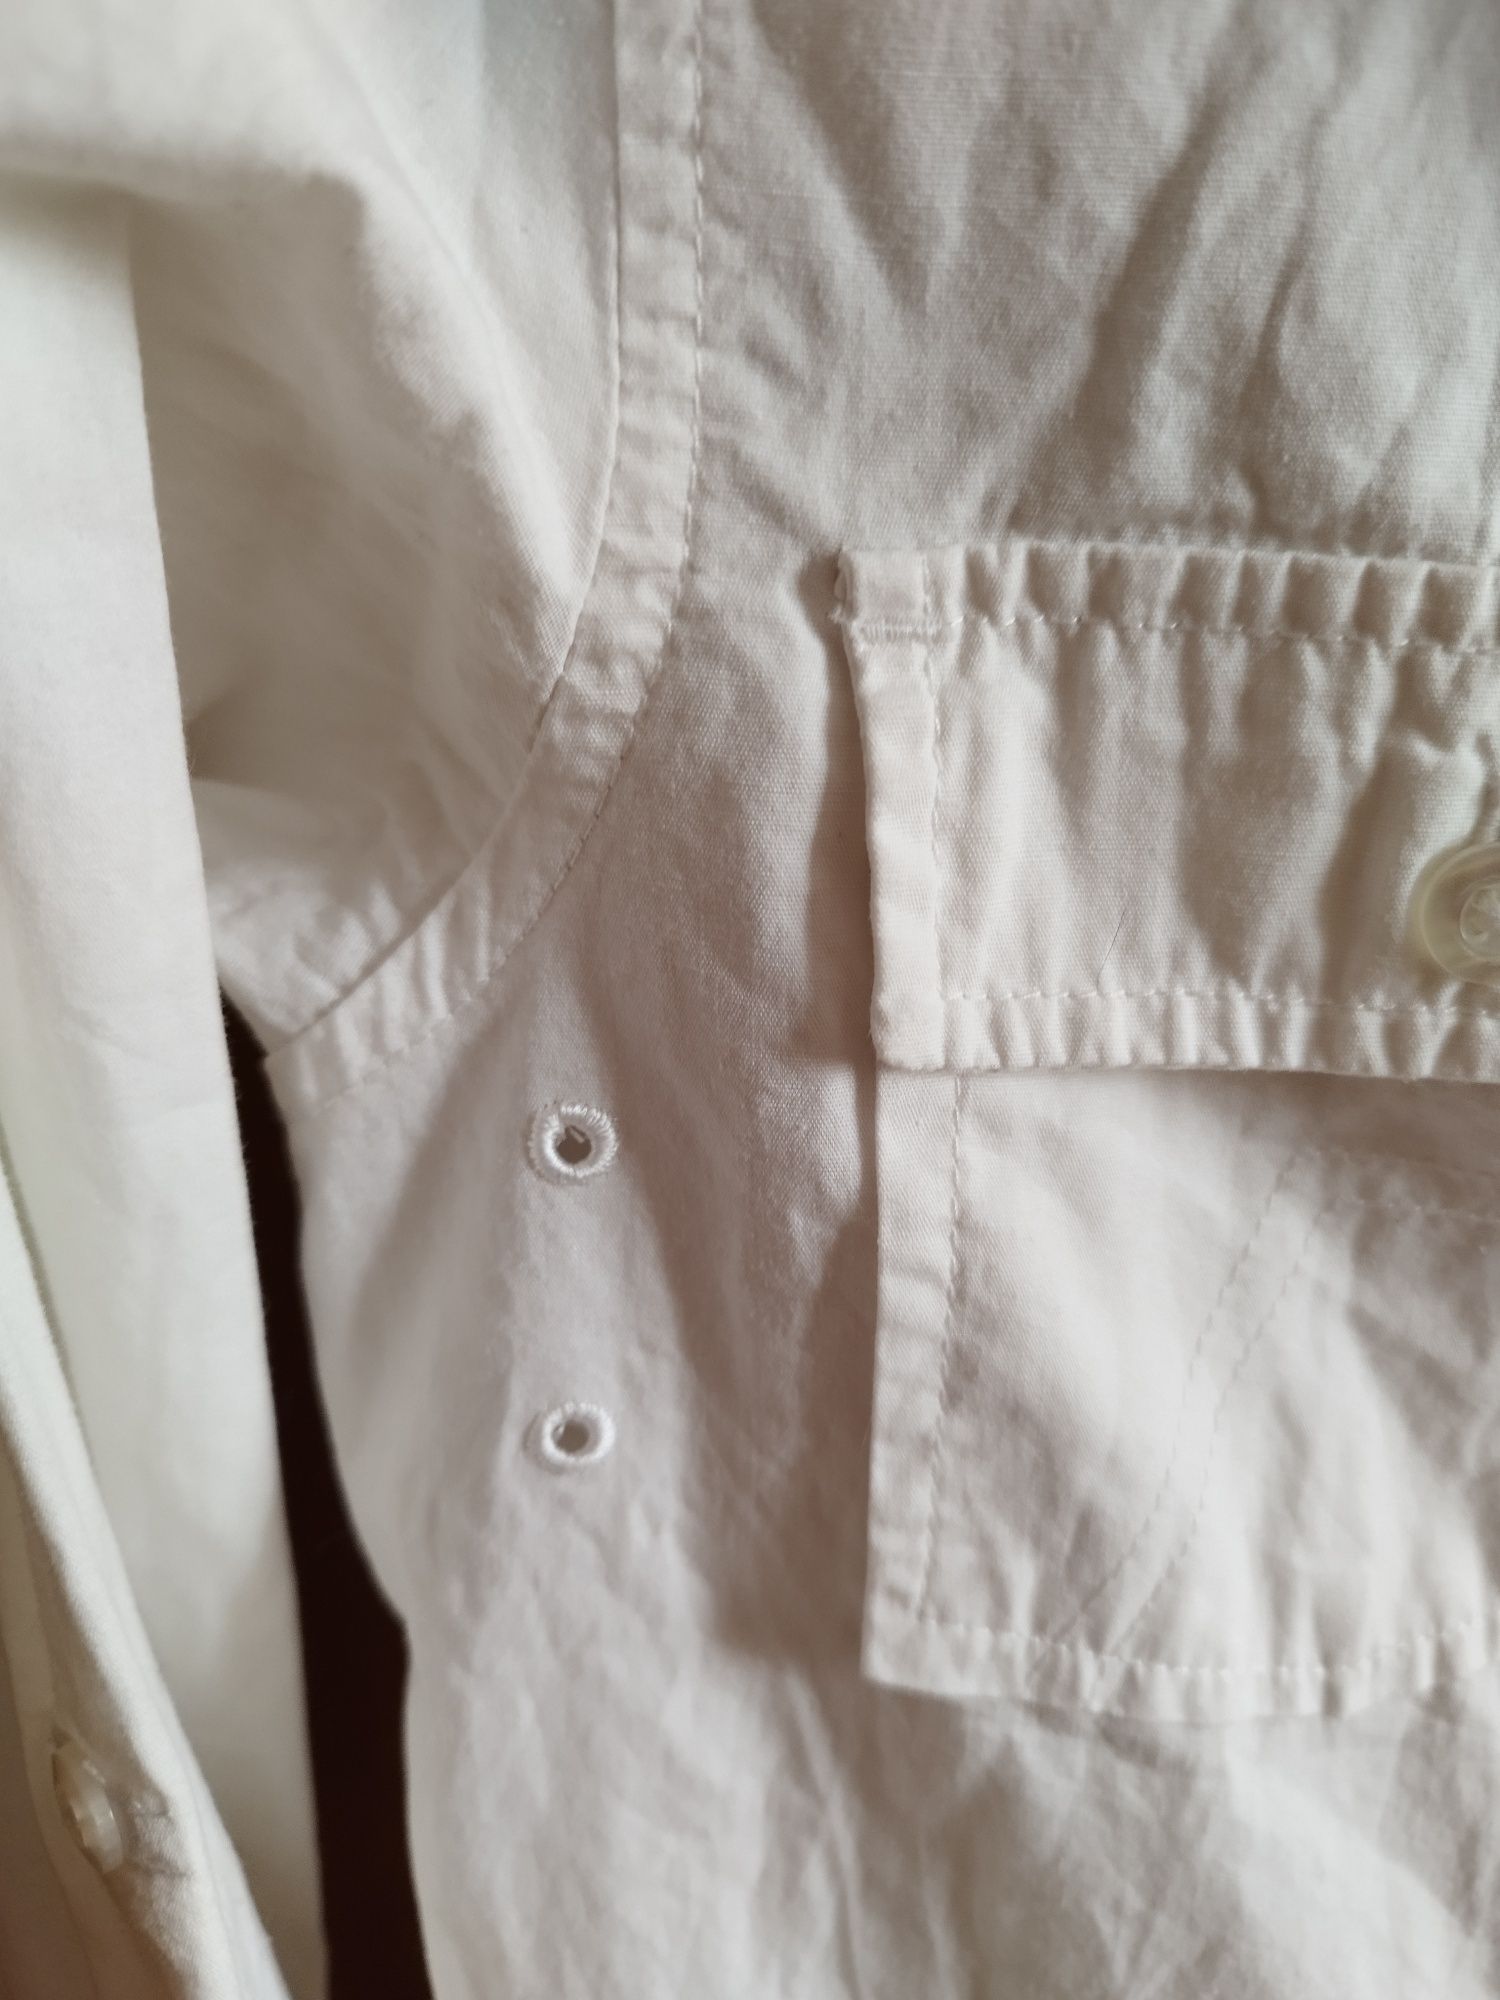 Biała koszula wizytowa z nadrukiem 140, długi, krótki rękaw